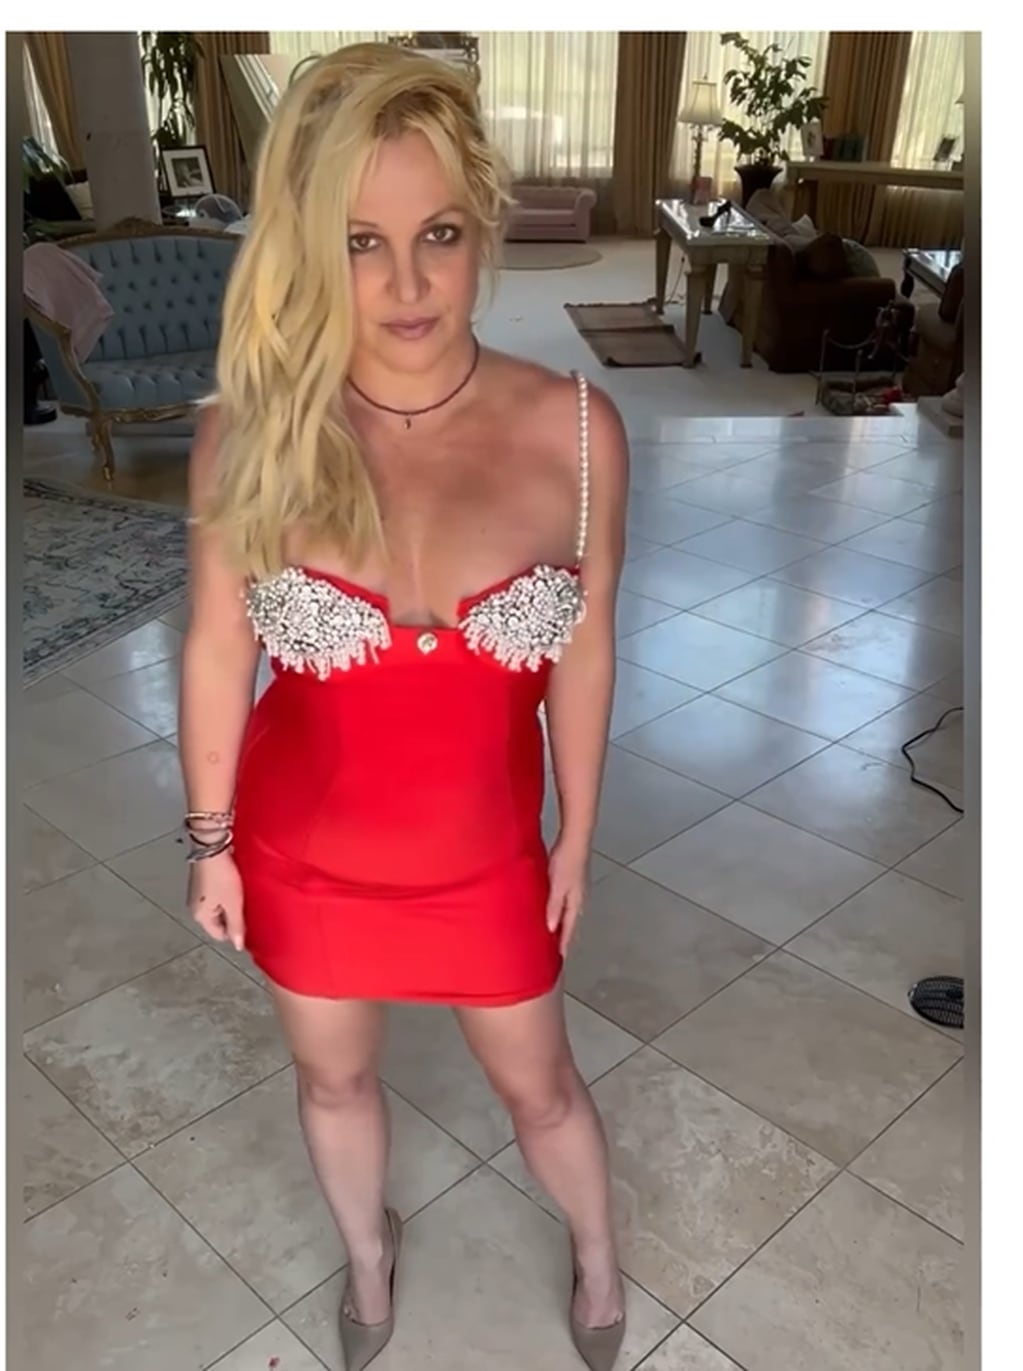 Puro fuego: Britney Spears cautivó Instagram con un vestido rojo pasión